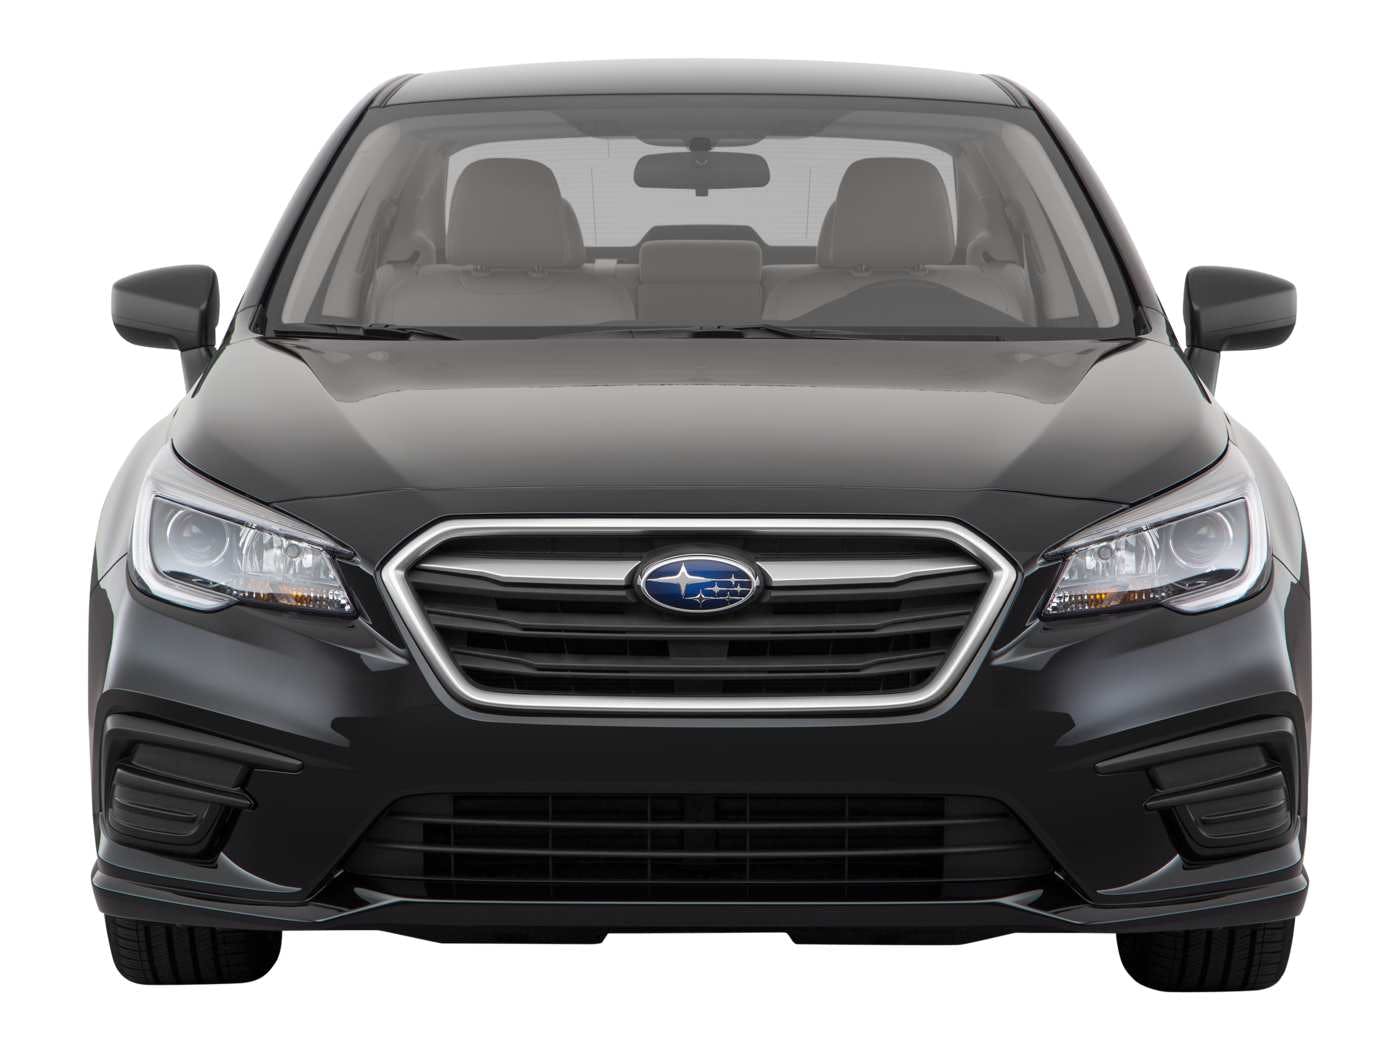 2018 Subaru Legacy Review | Pricing, Trims & Photos - TrueCar